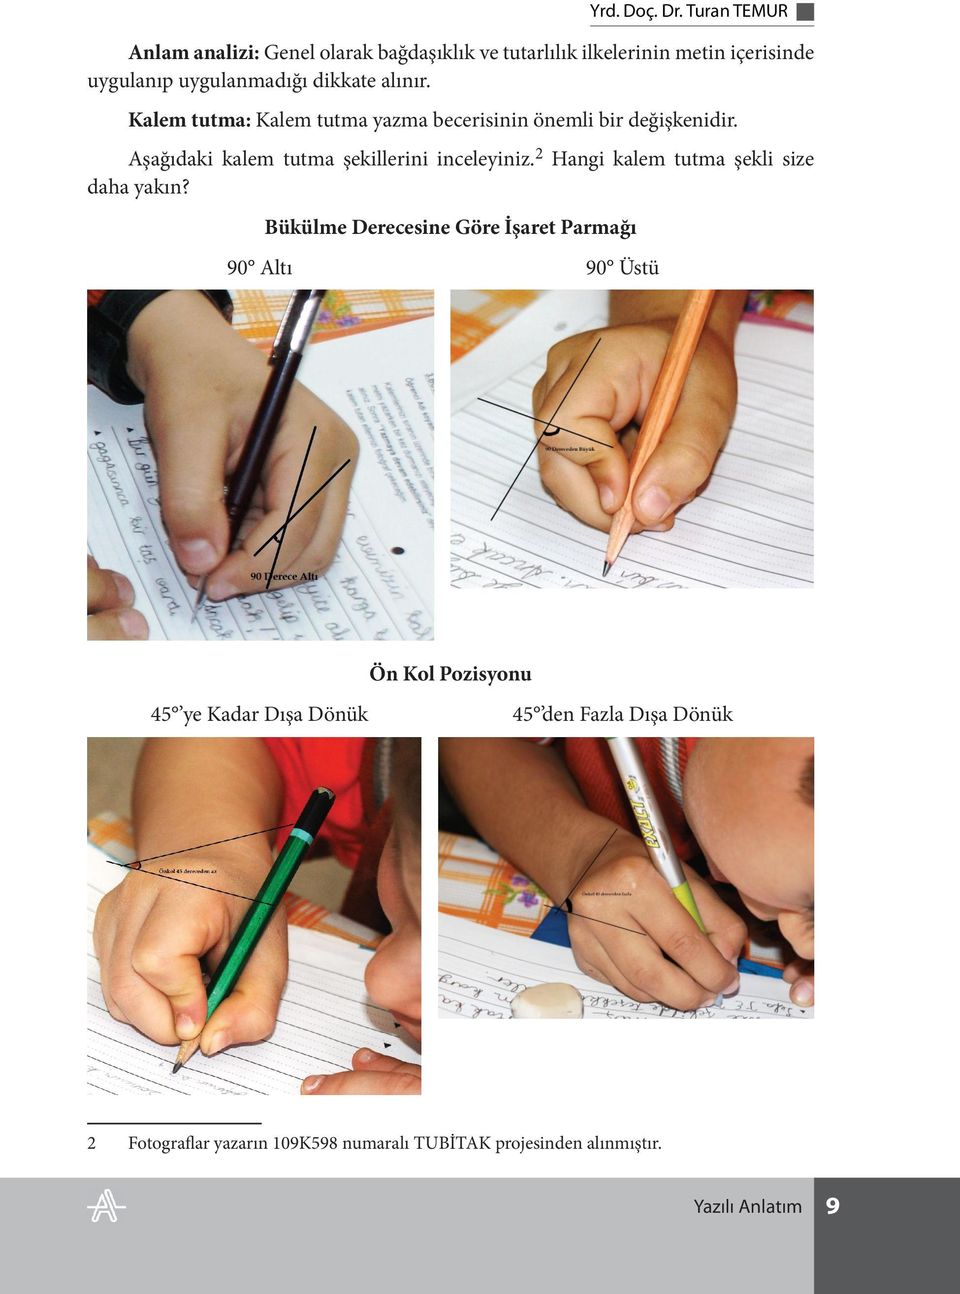 alınır. Kalem tutma: Kalem tutma yazma becerisinin önemli bir değişkenidir. Aşağıdaki kalem tutma şekillerini inceleyiniz.